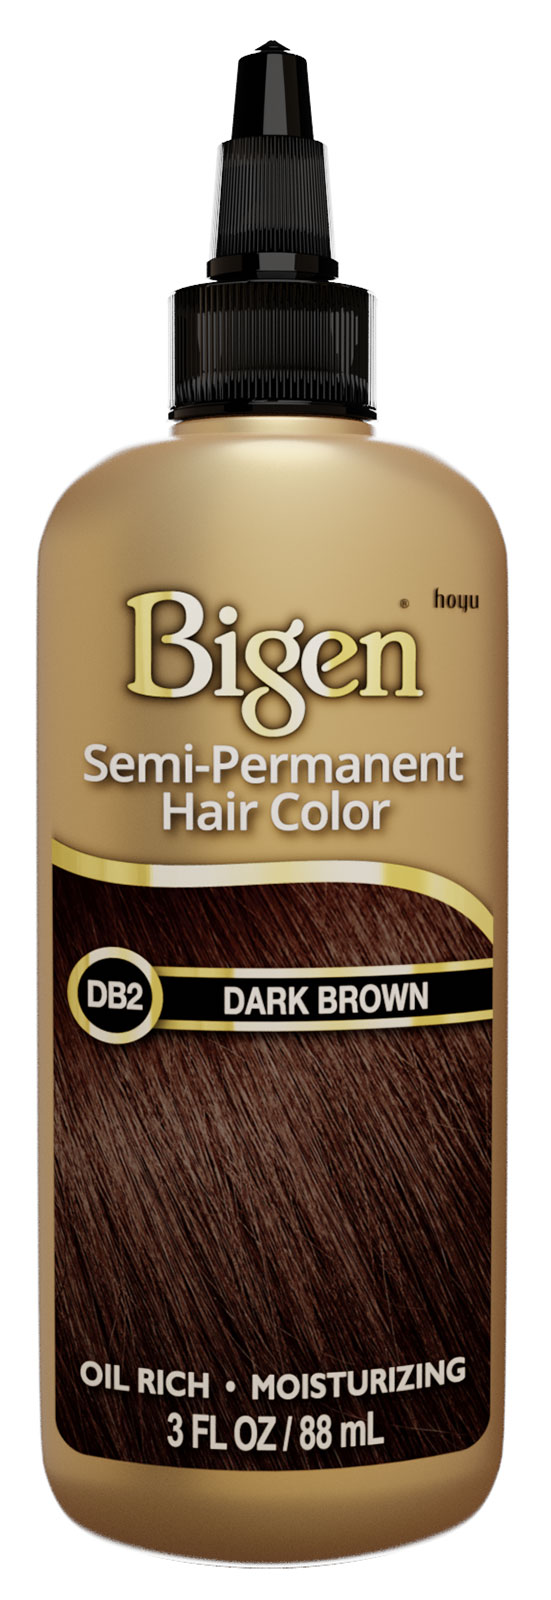 DB2-Dark Brown